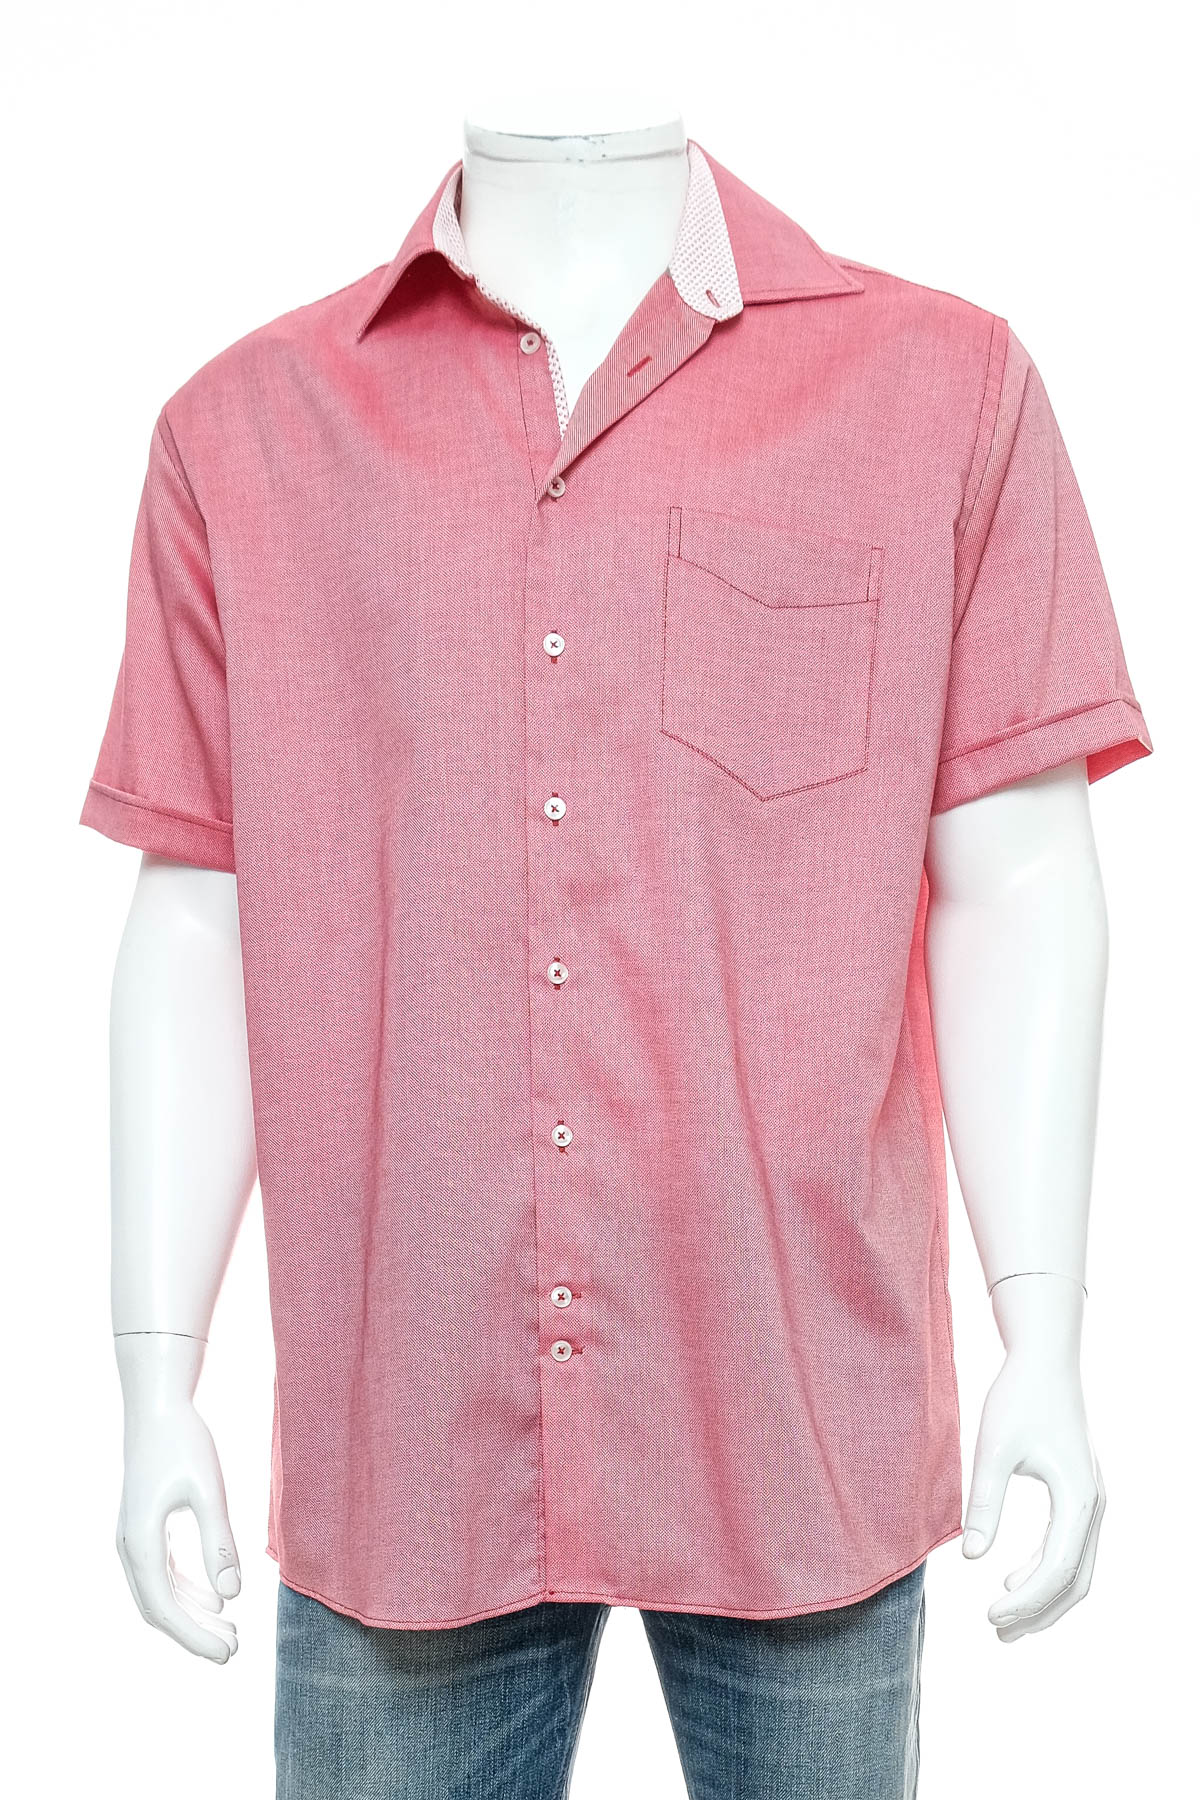 Ανδρικό πουκάμισο - Hatico - 0